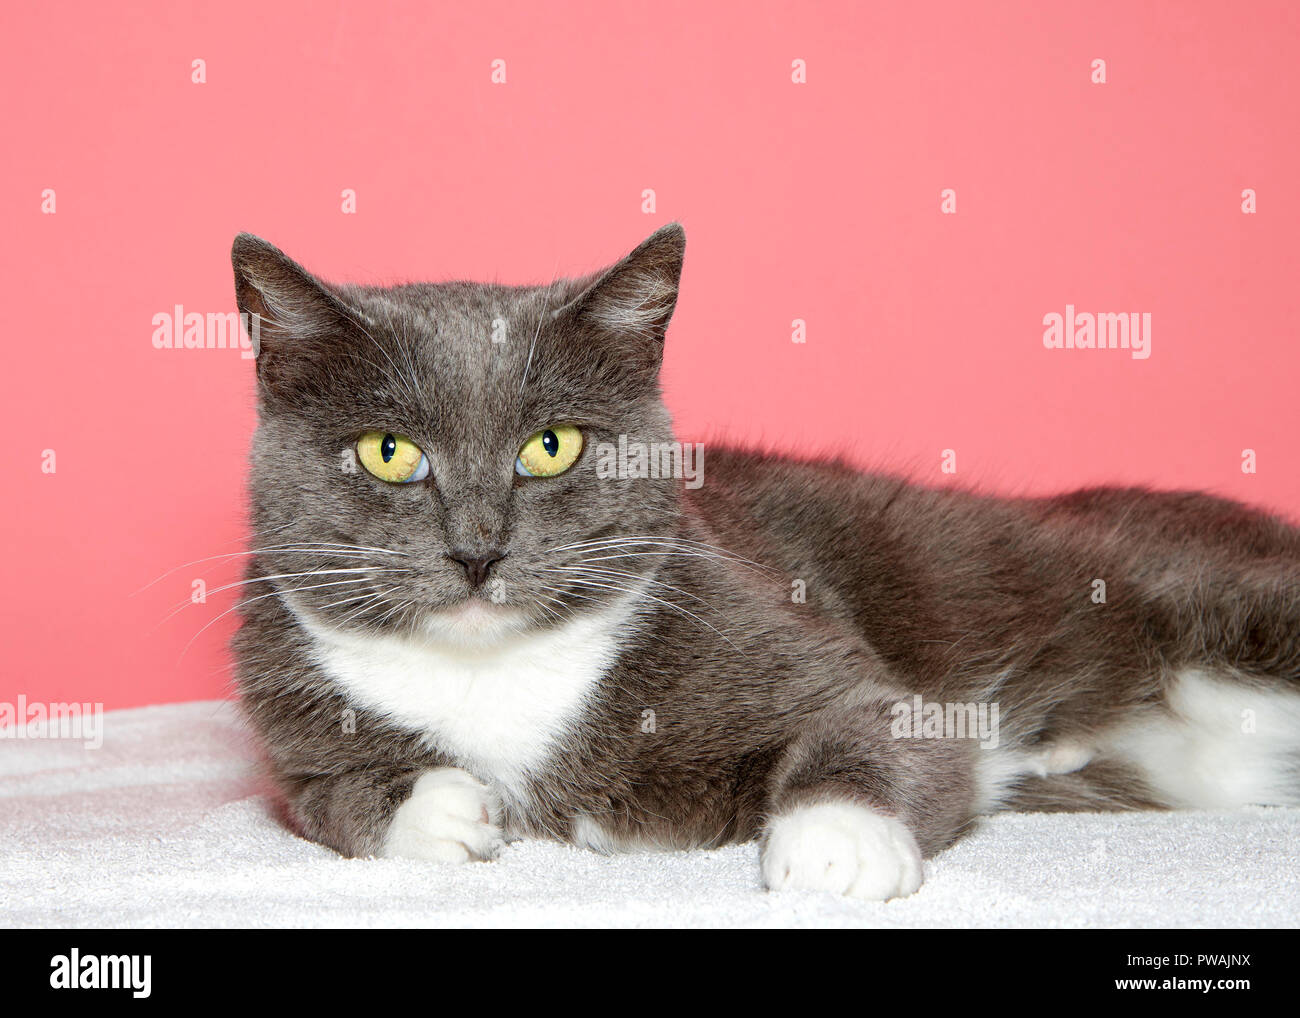 Nahaufnahme, Porträt einer grauen und weißen tabby Katze mit gelben, grünen Augen Blick auf Viewer, Verlegung auf weiße Decke mit rosa Hintergrund. Stockfoto